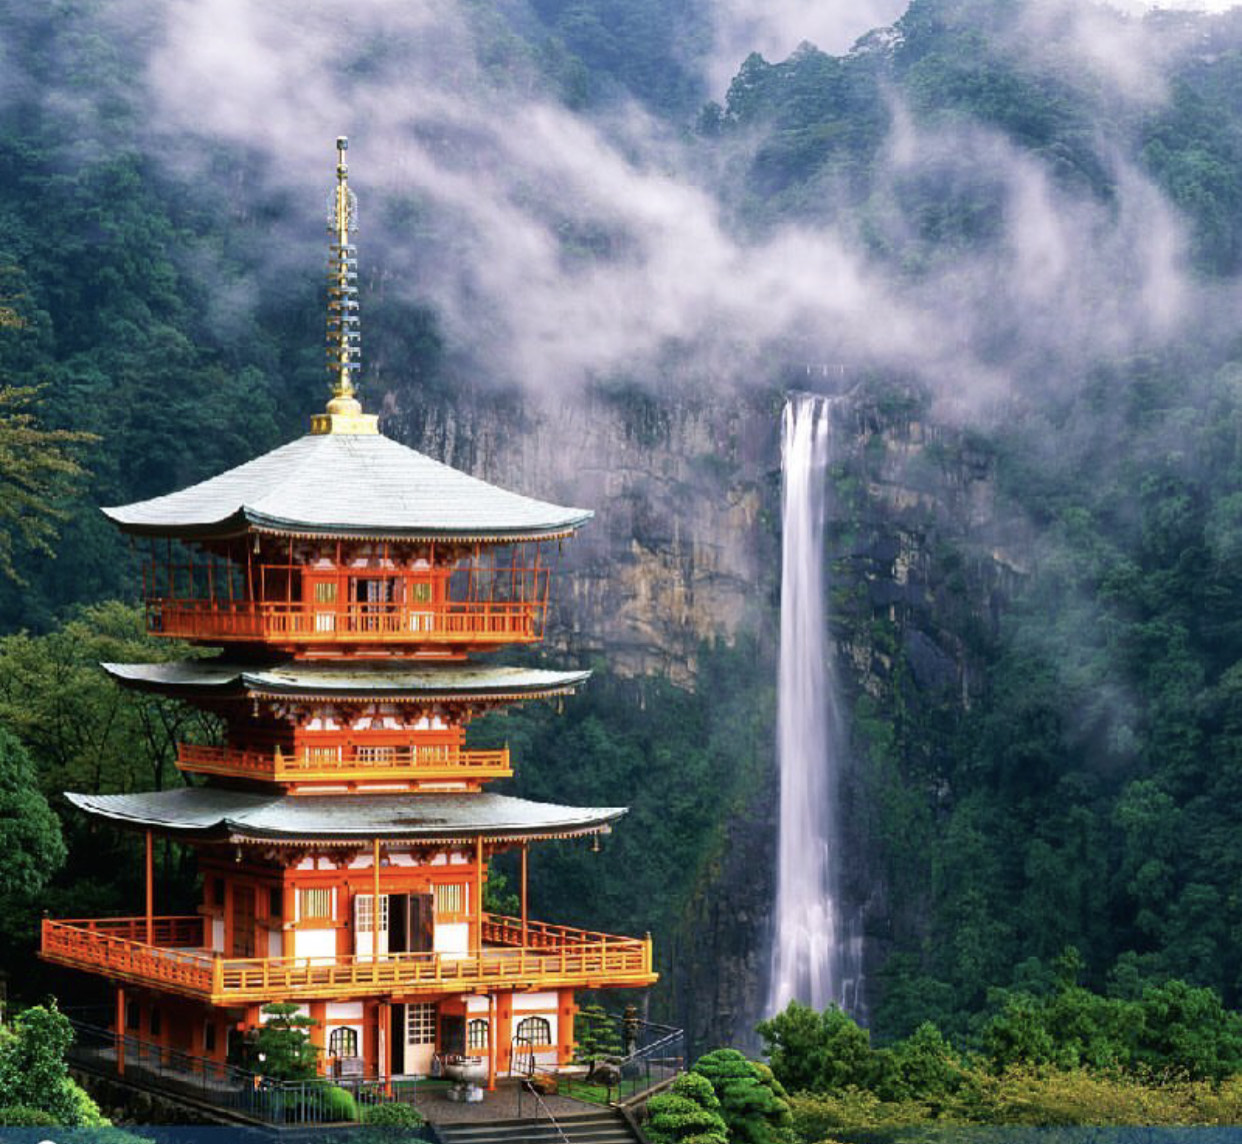 5 Wisata Air Terjun Terbaik di Jepang dengan Panorama Alam yang Indah, Wajib Kunjungi!